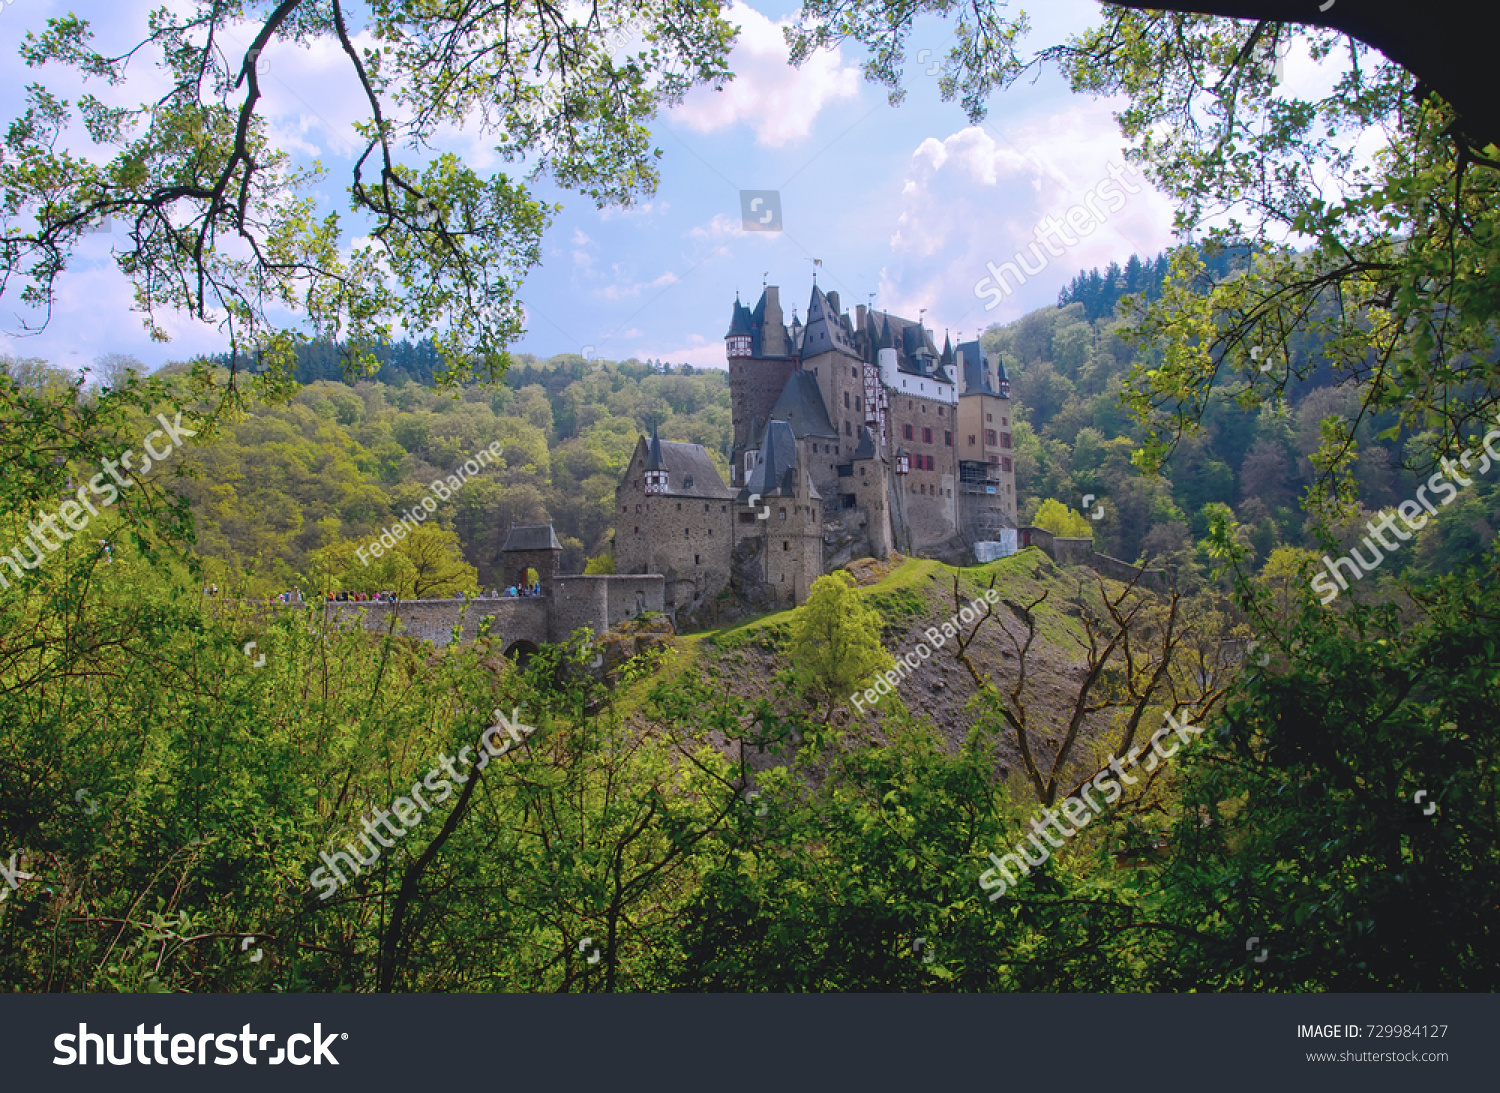 stock-photo-eltz-castle-in-rhineland-pal